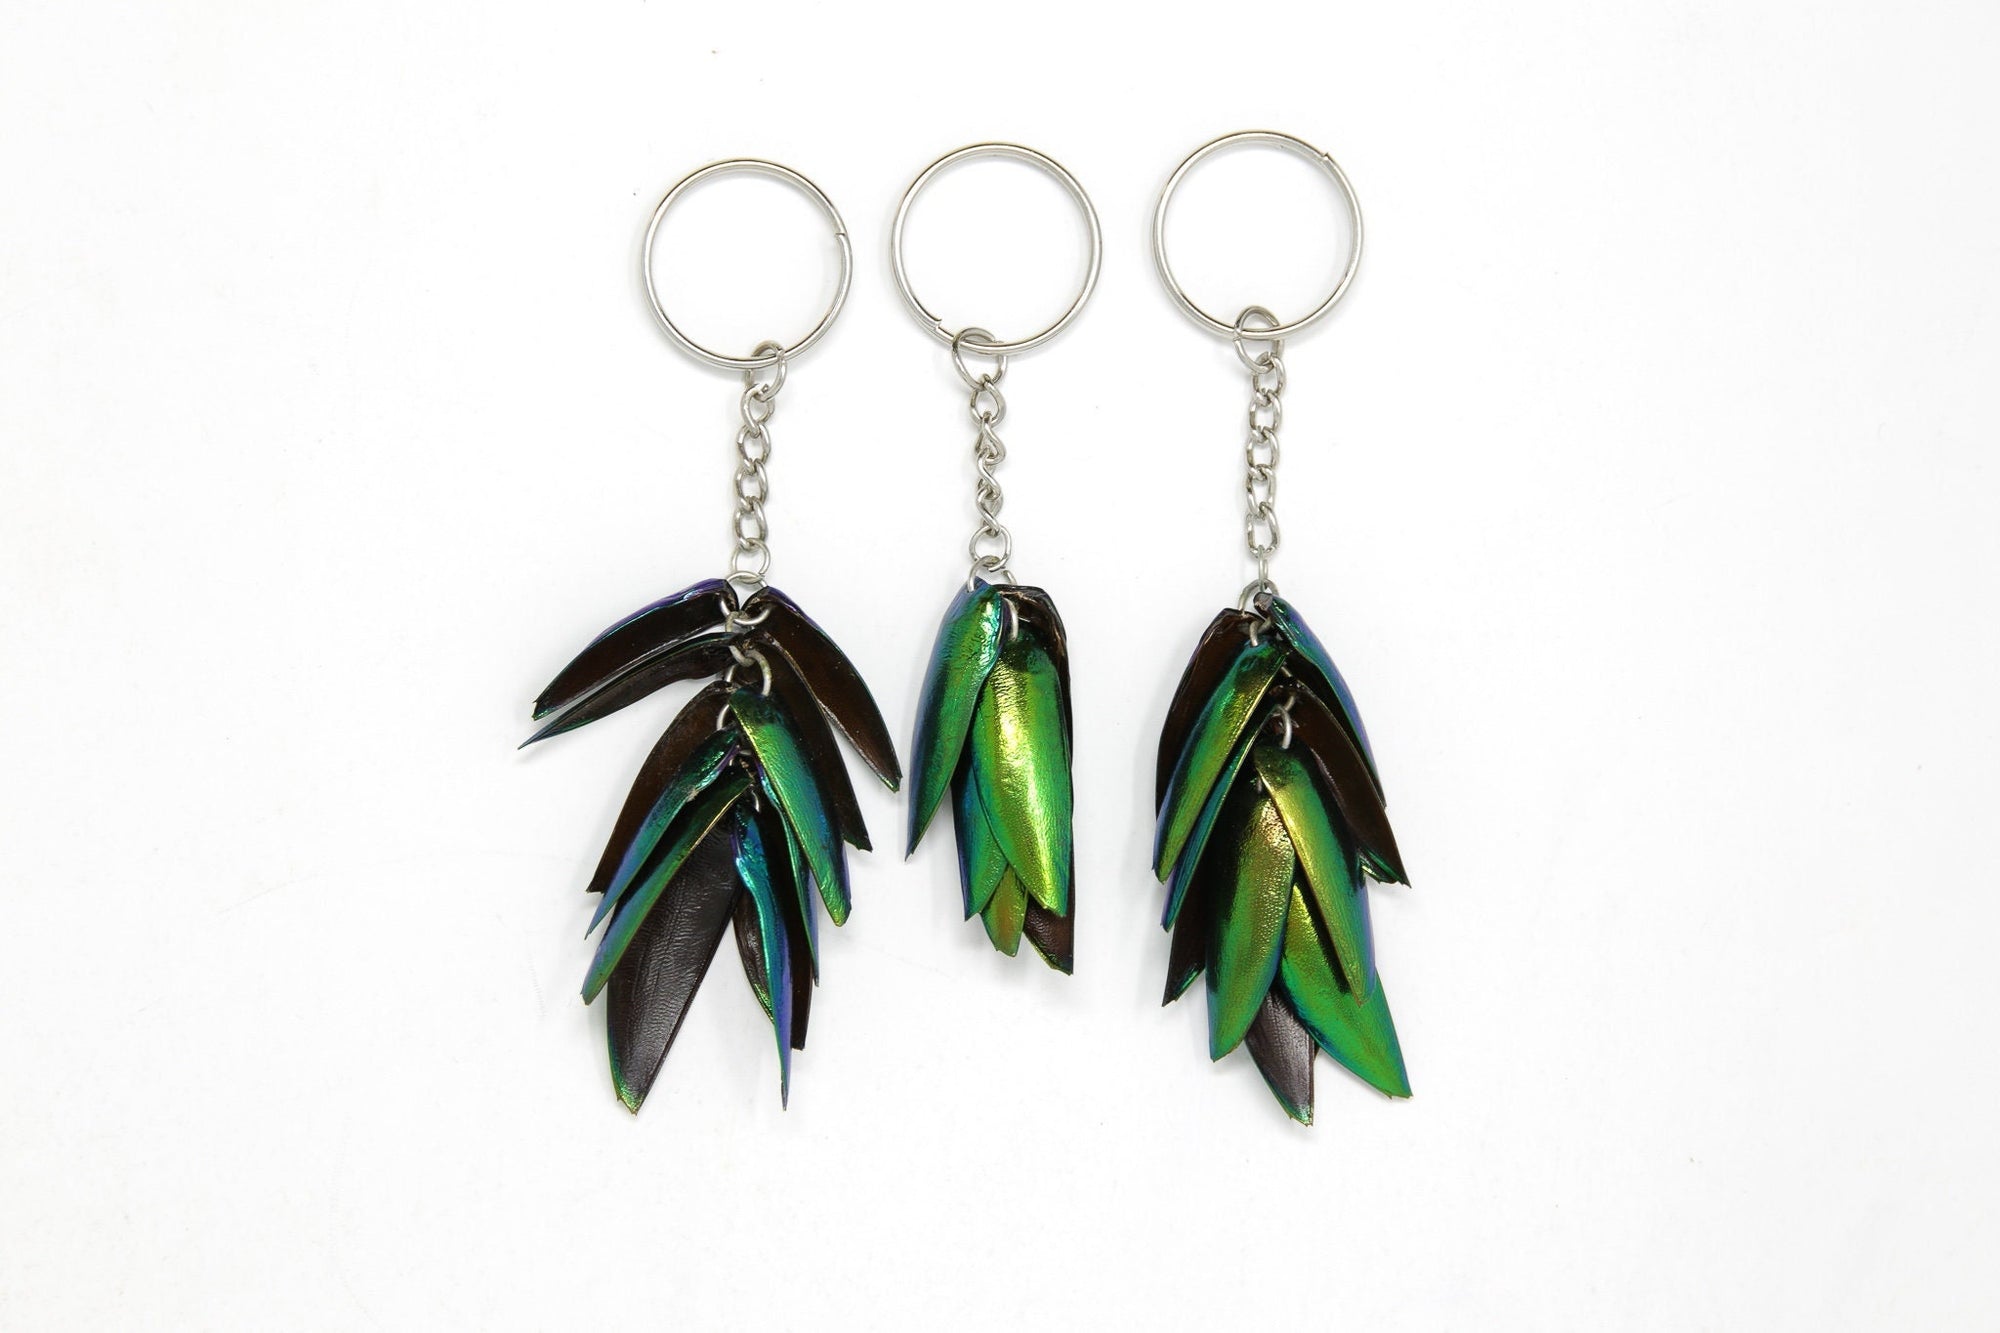 THREE (3) Jewel Beetle Keyrings - Real Metallic Green Beetle Wings Elytra Taxidermy Art Jewelry